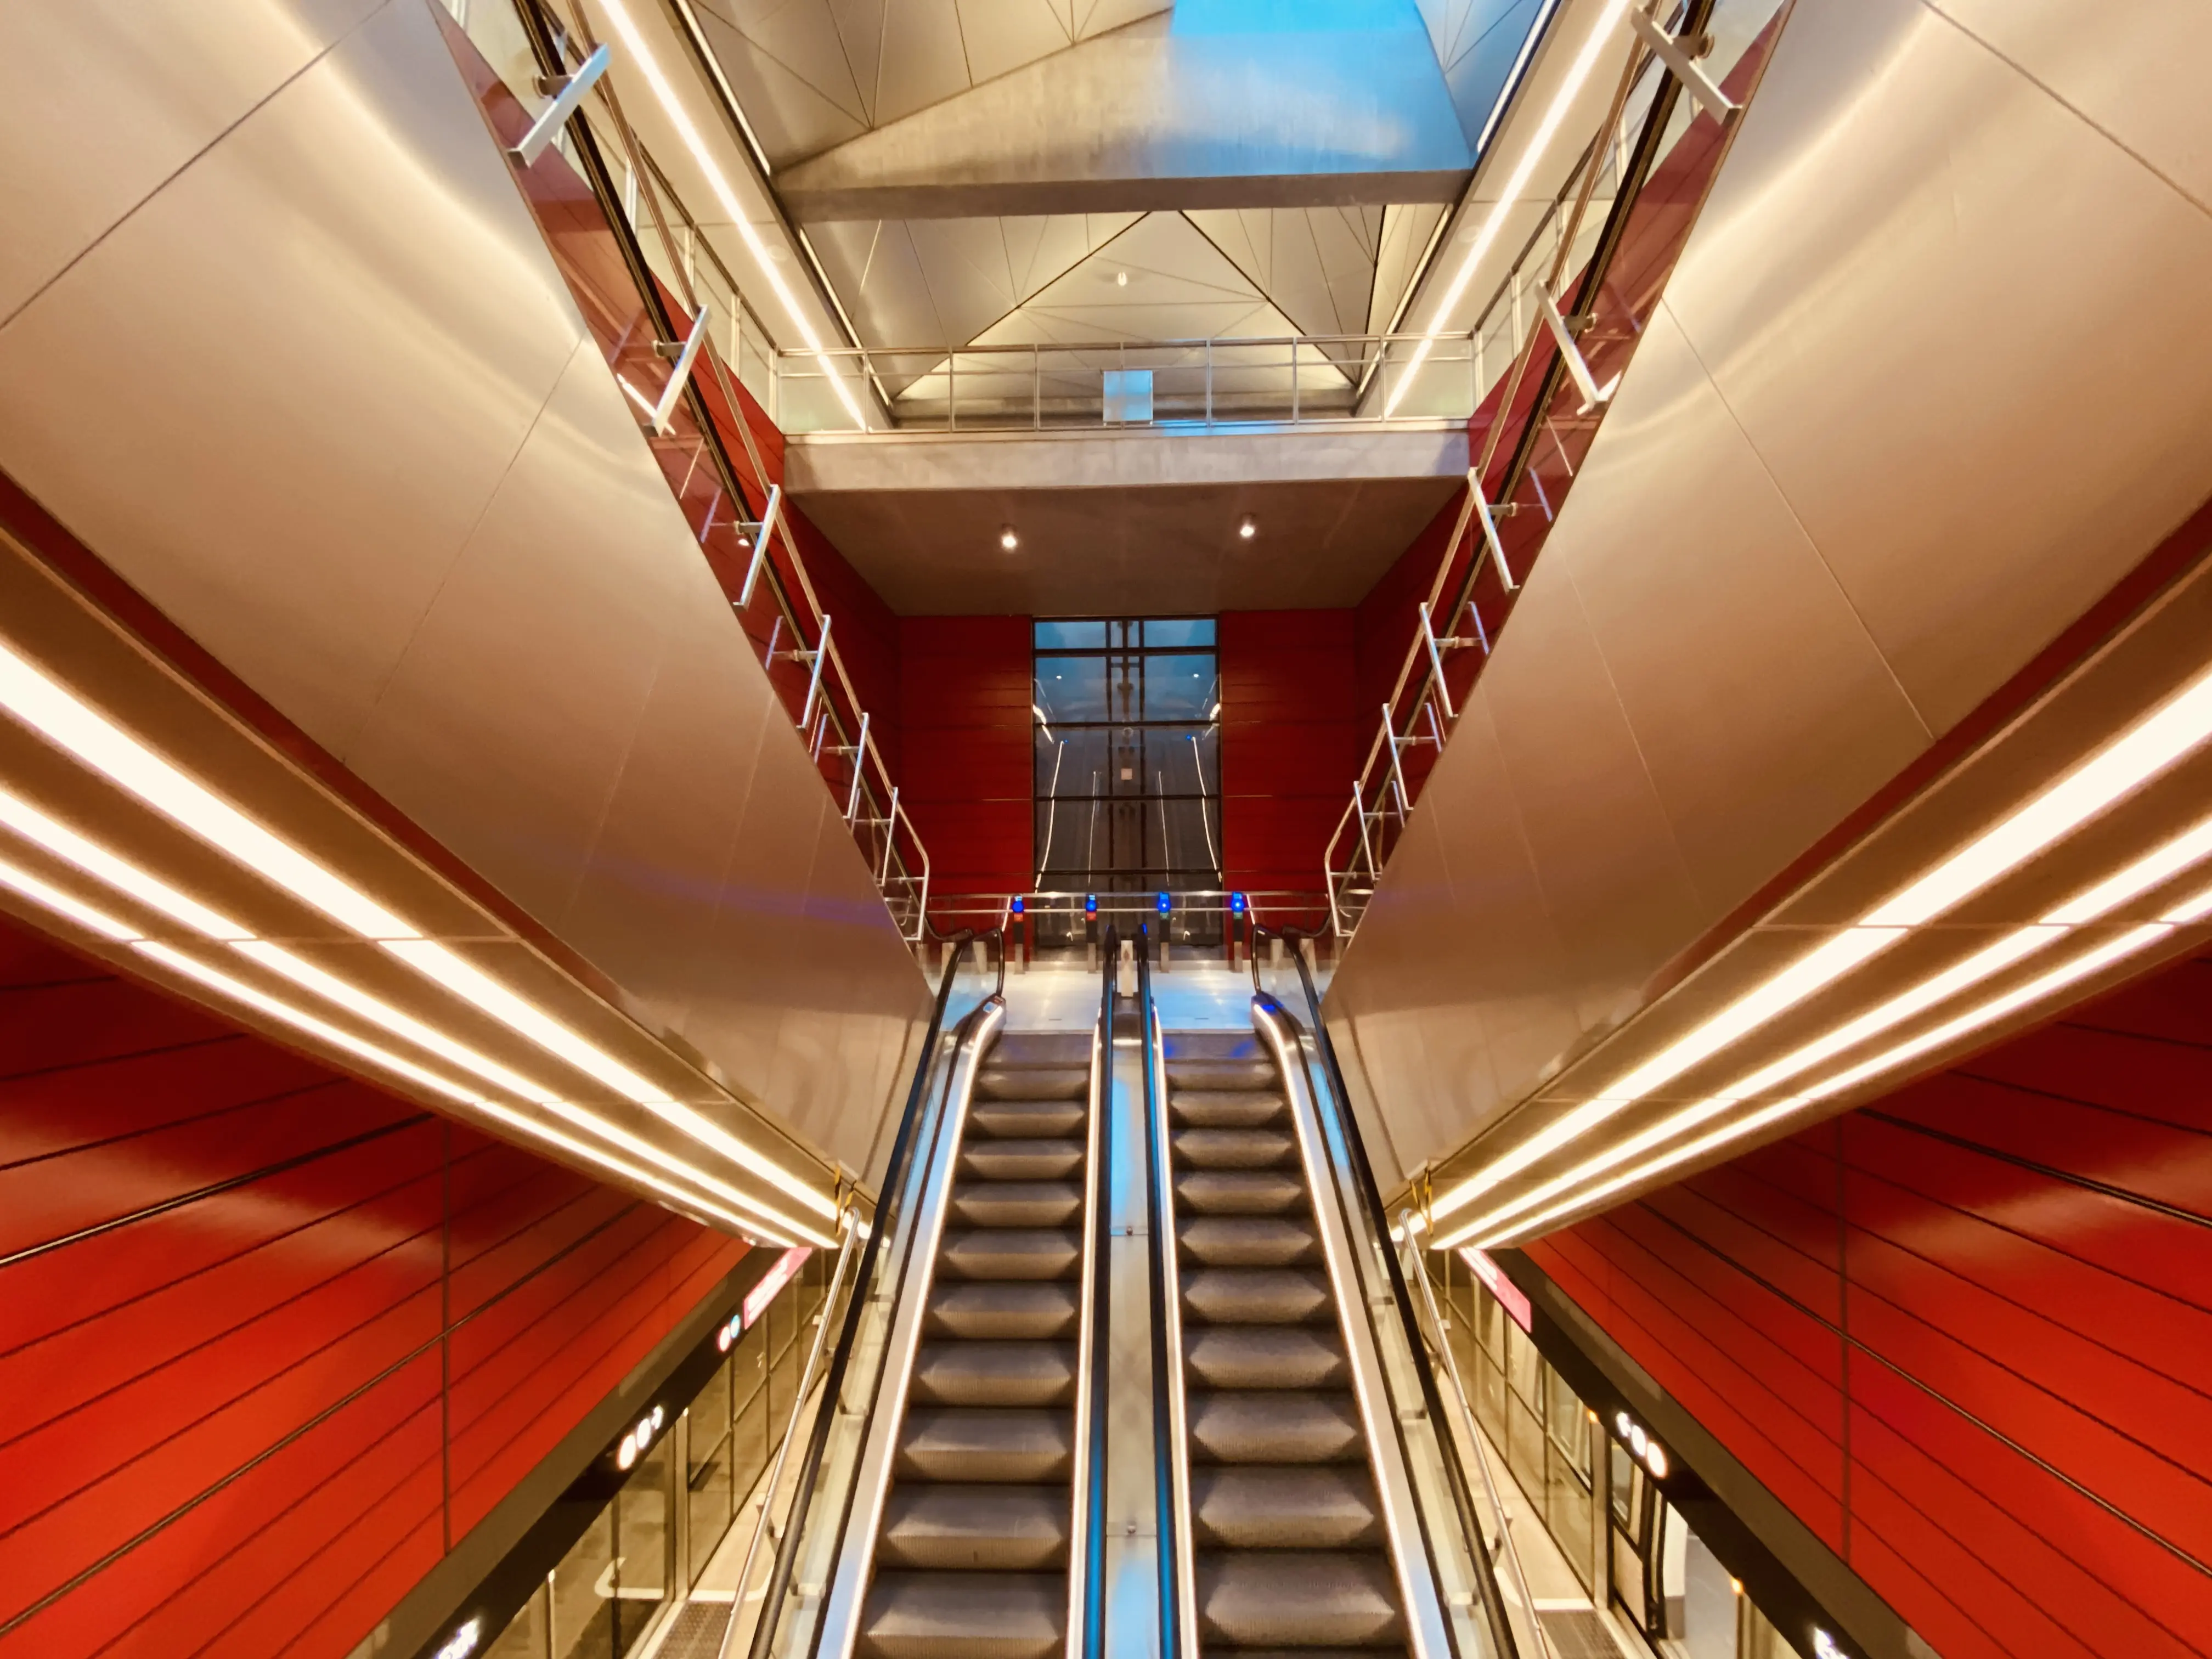 Billede af København H Metrostation, som har en varm og dyb rød farve, der signalerer trafik, transport og transit.